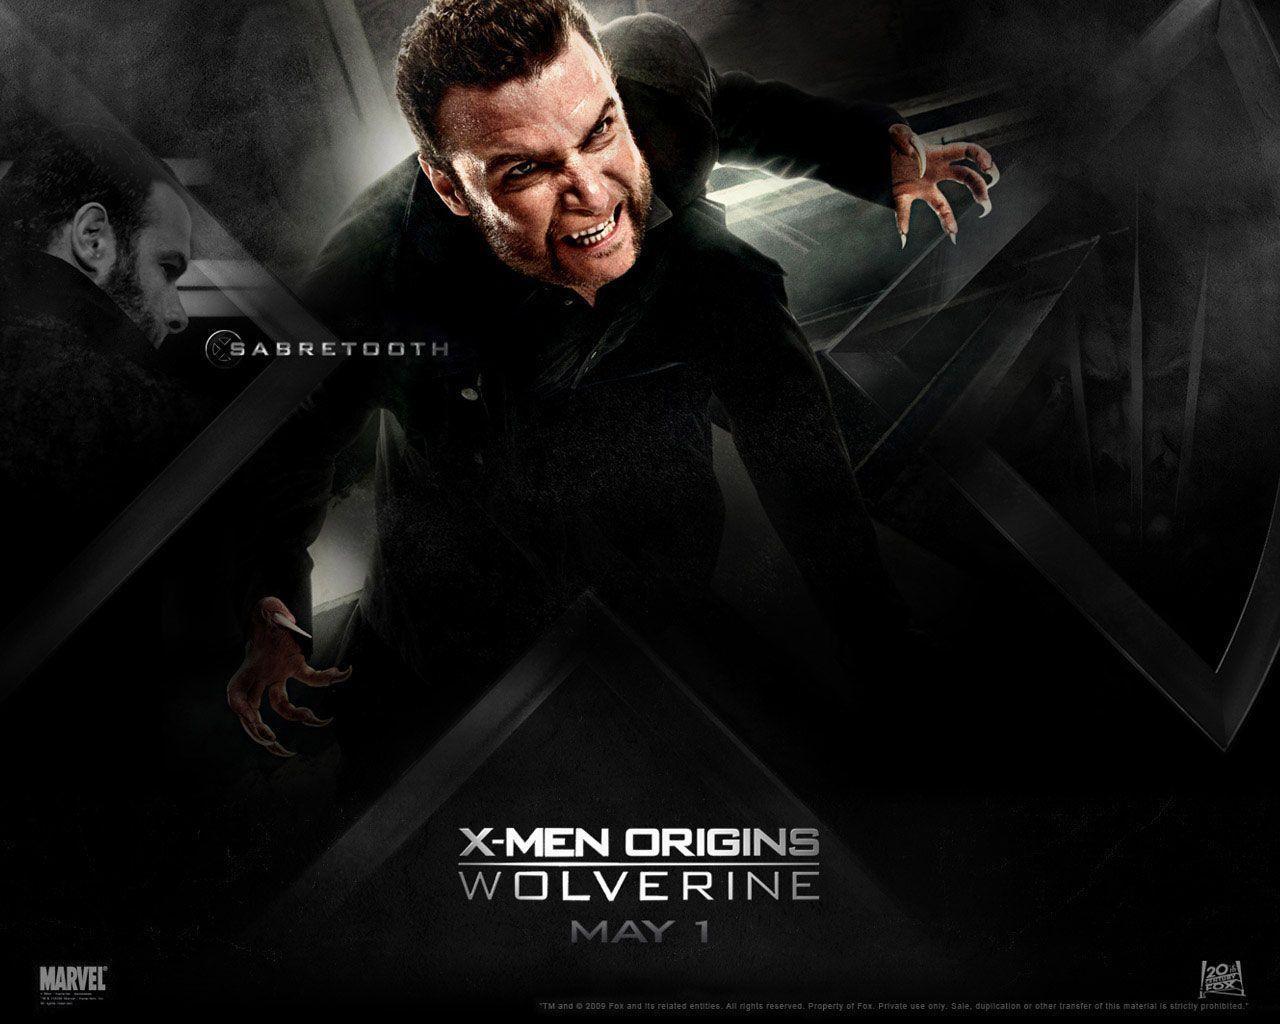 X Men Origins Wolverine Wallpaper 1280x1024 px Free Download